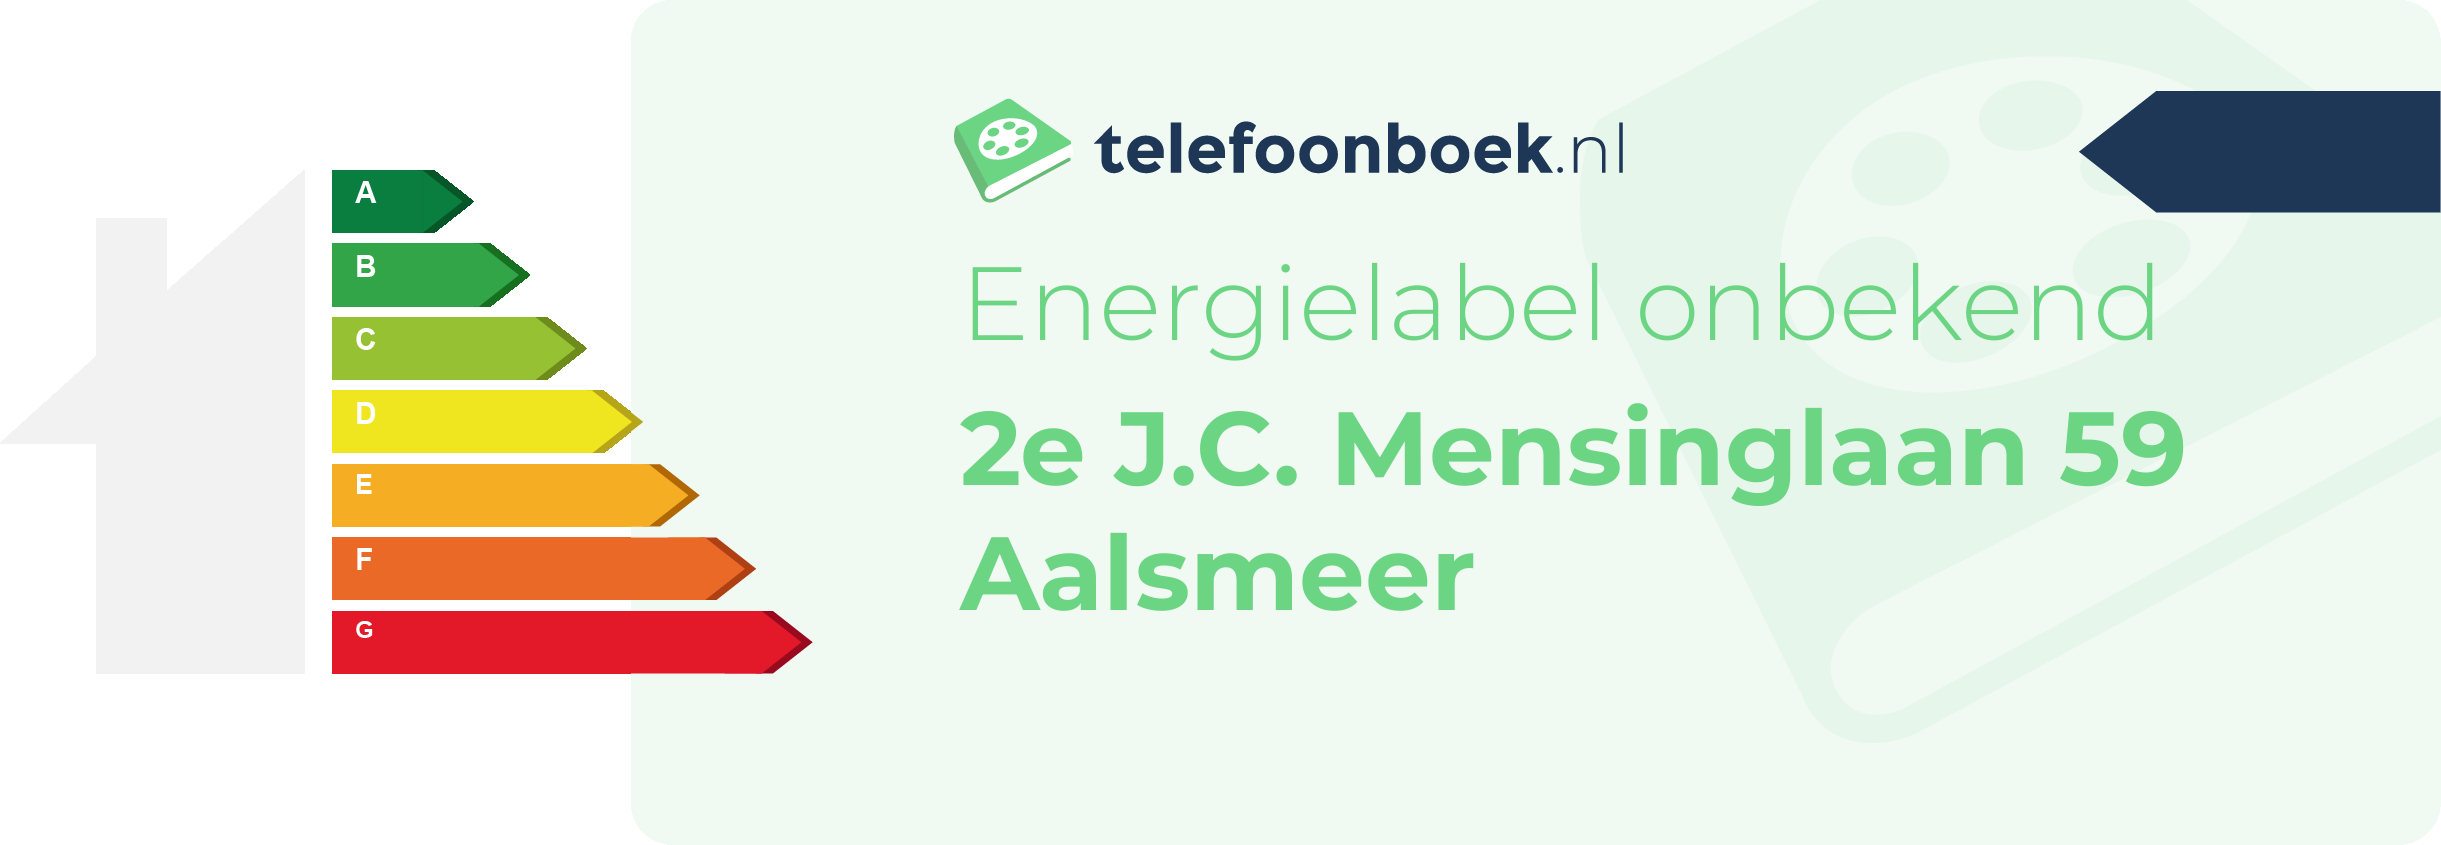 Energielabel 2e J.C. Mensinglaan 59 Aalsmeer